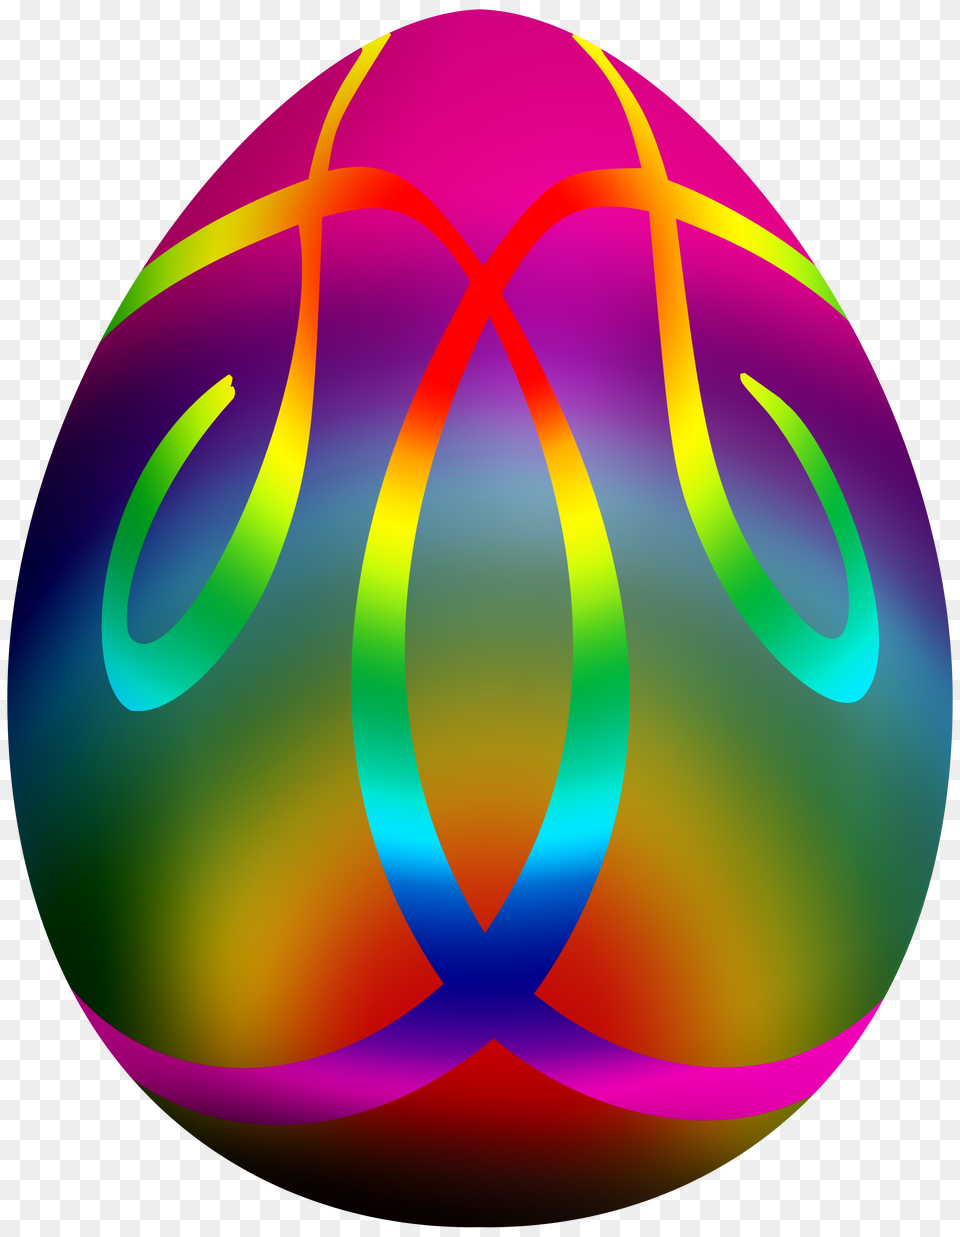 Colorful Easter Egg Clip Art, Easter Egg, Food, Disk Free Png